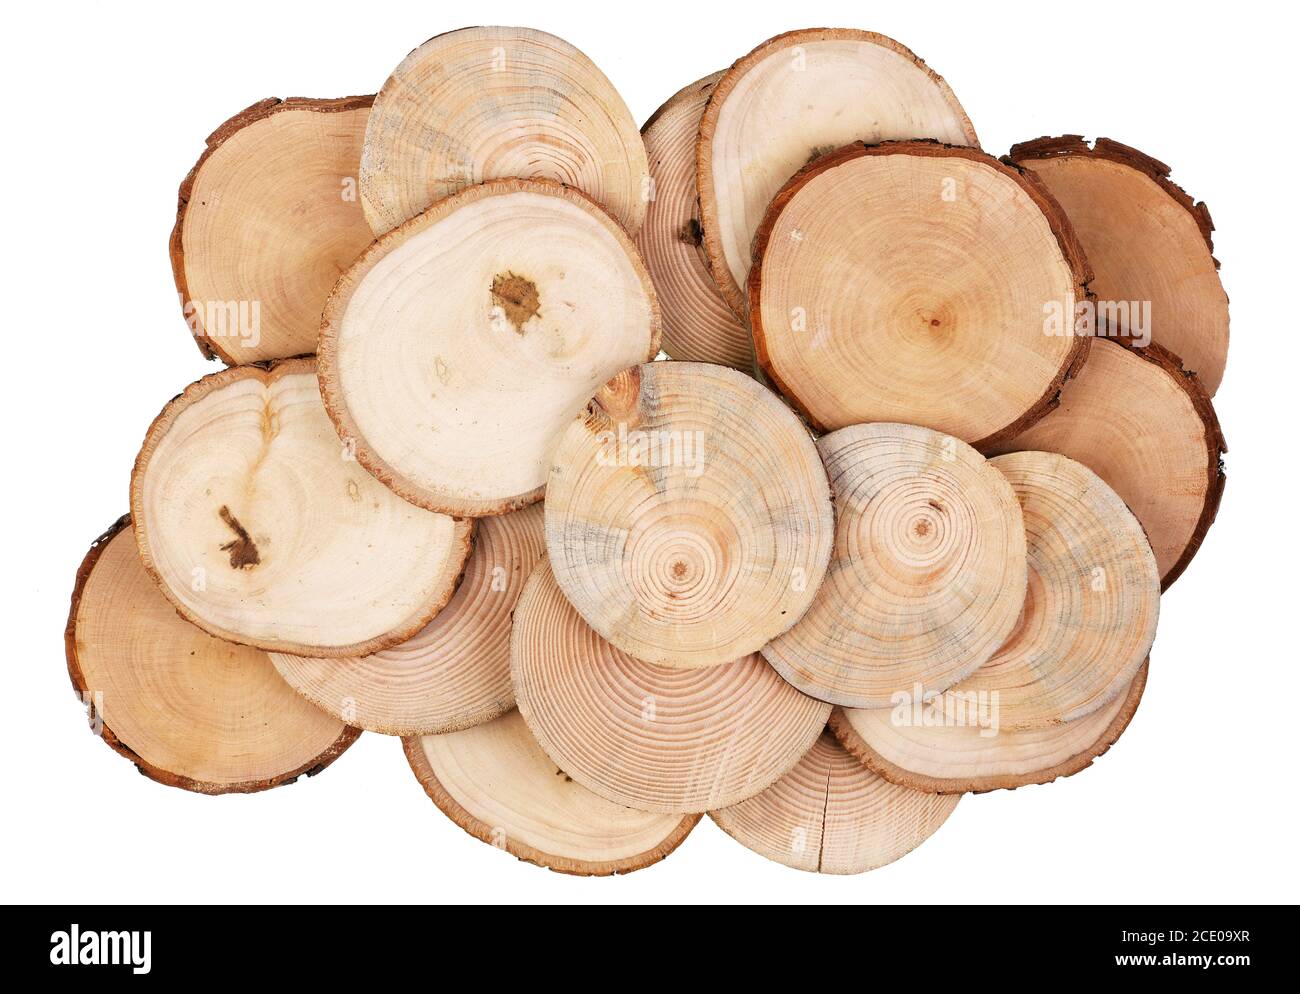 Tagli rotondi di tagli di sega di varie specie di legno - betulla, mela, pera e pino isolato insieme Foto Stock